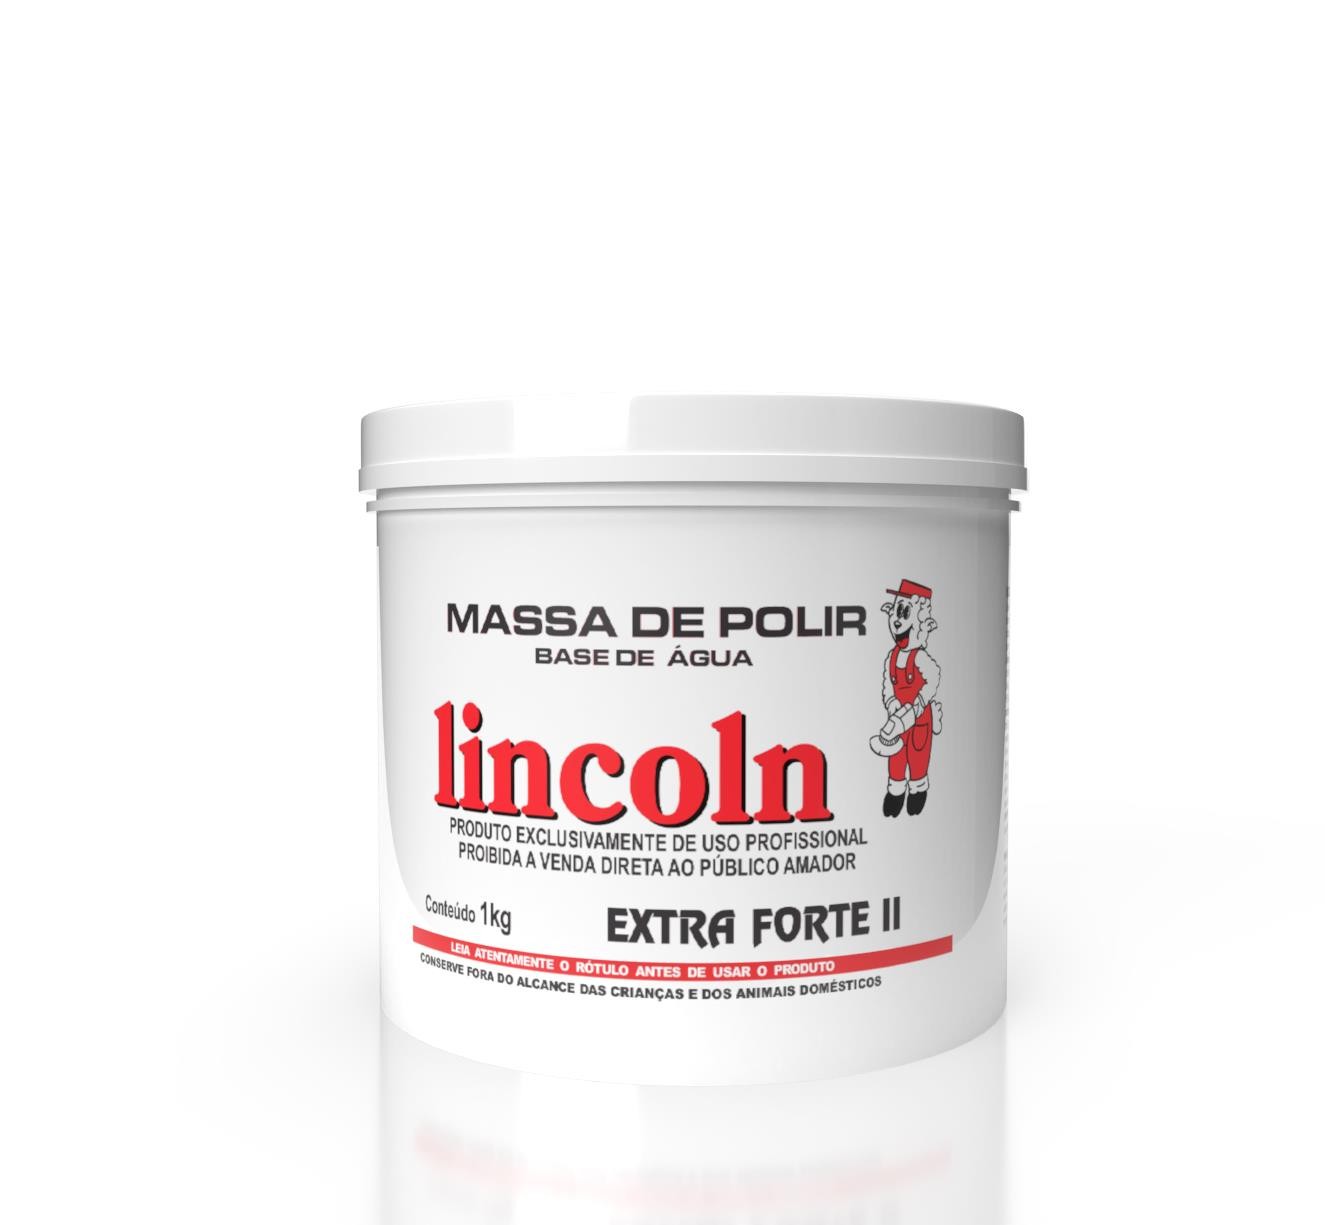 EXTRA FORTE MASSA DE POLIR N 2  1kg - LINCOLN